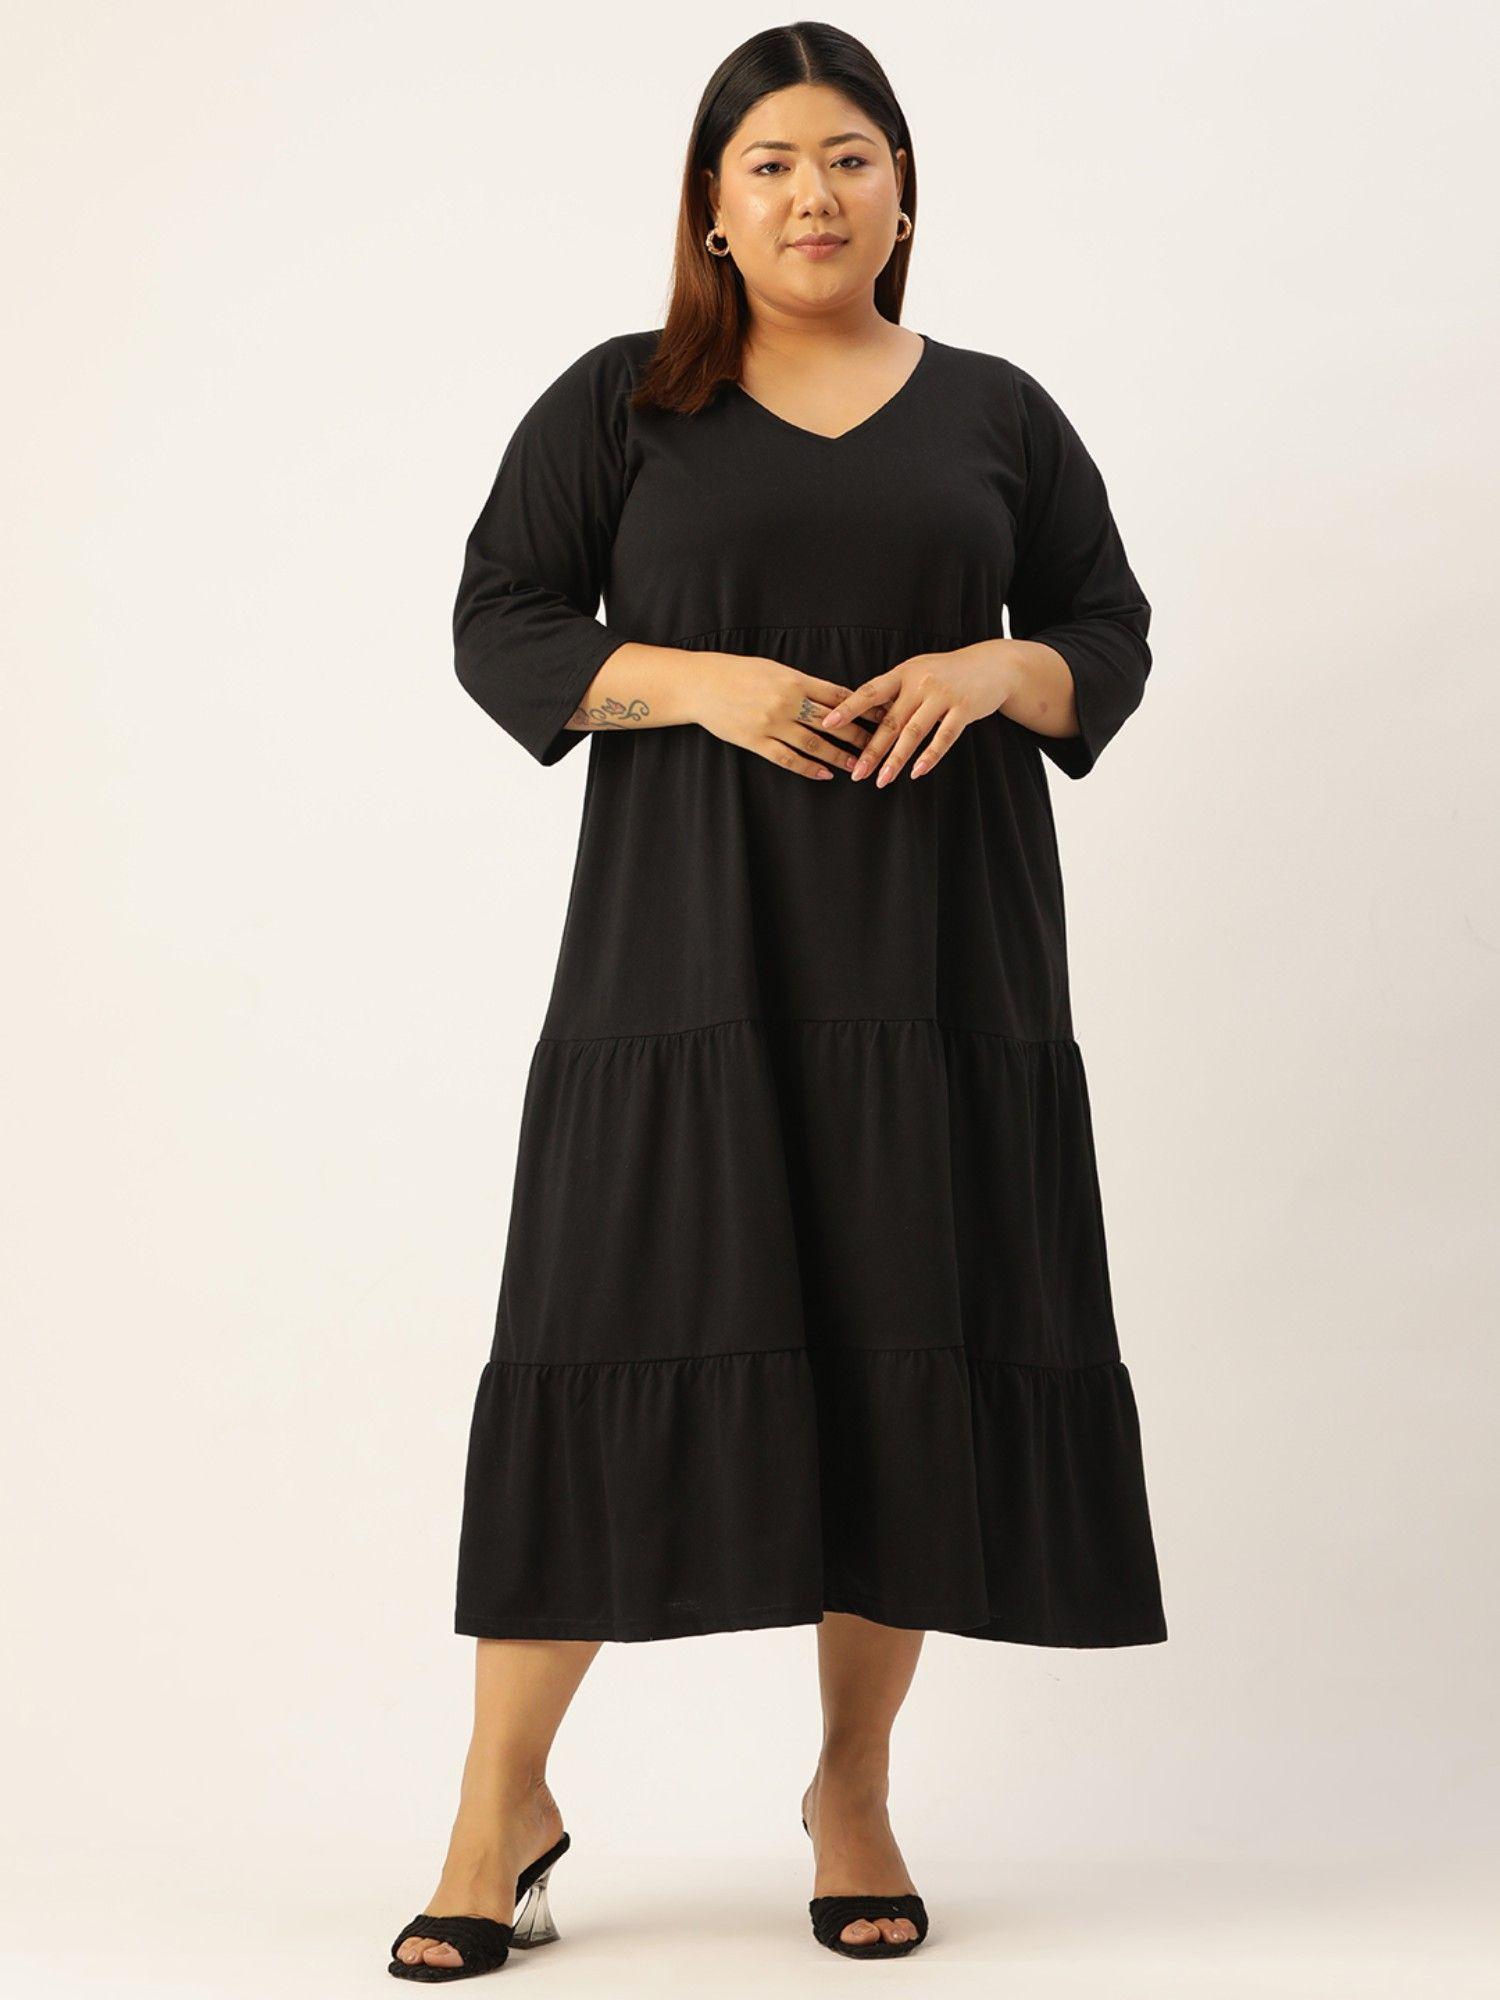 Plus Size Women's Black Solid Color Cotton Tiered Dress